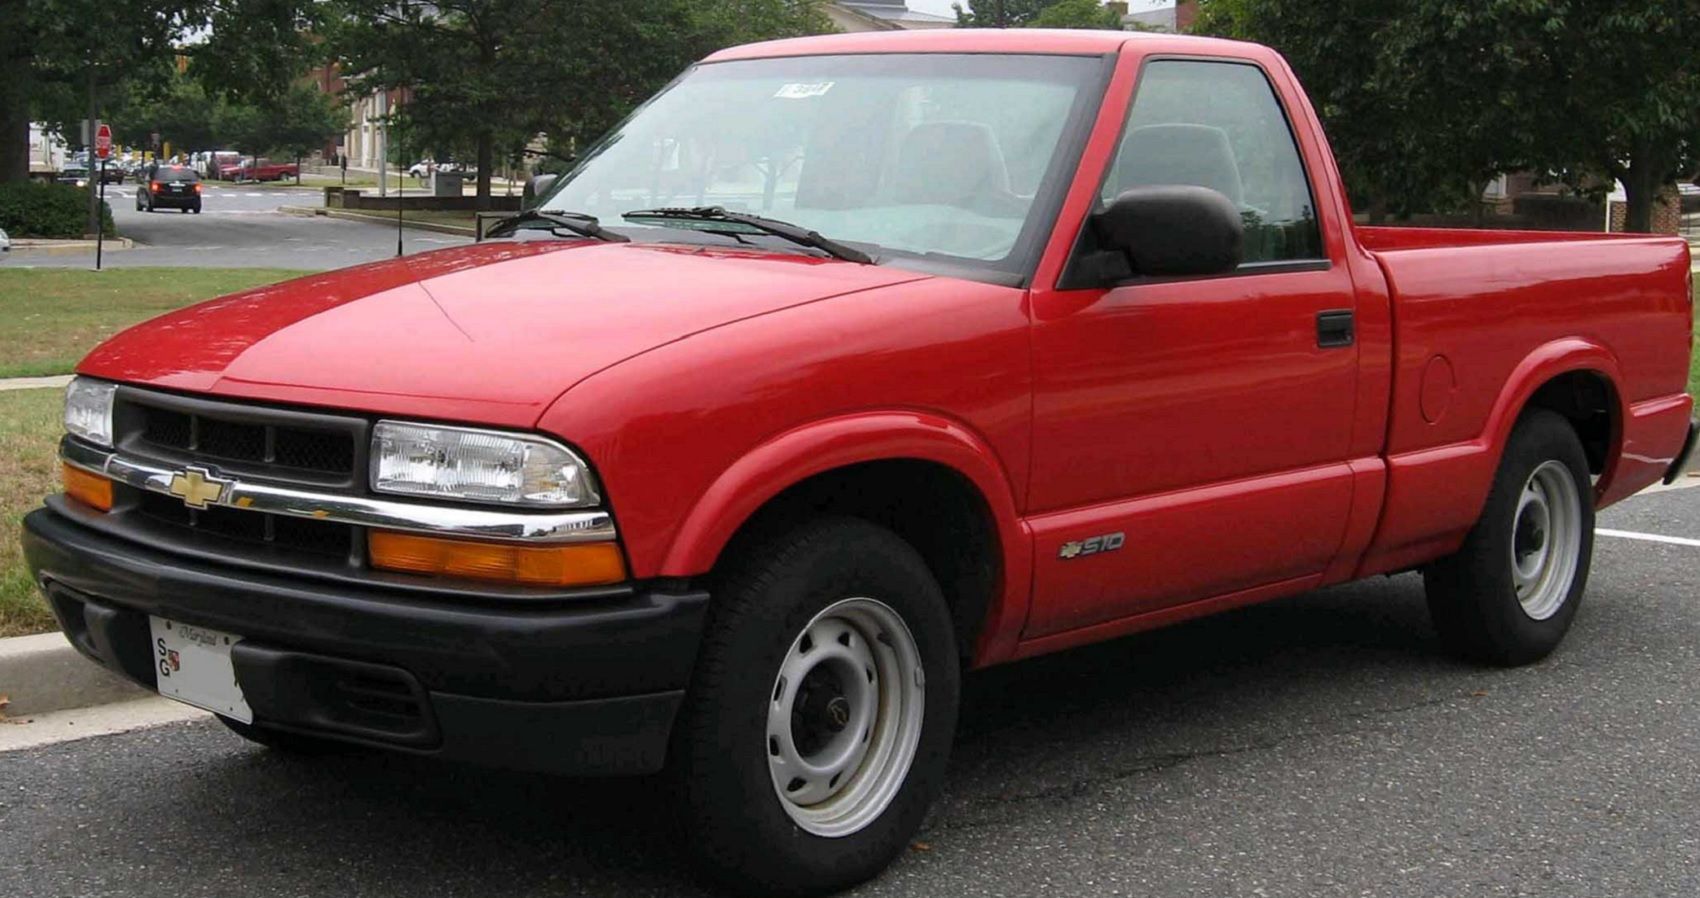 98-04 Chevrolet S-10 Pickup truck in red